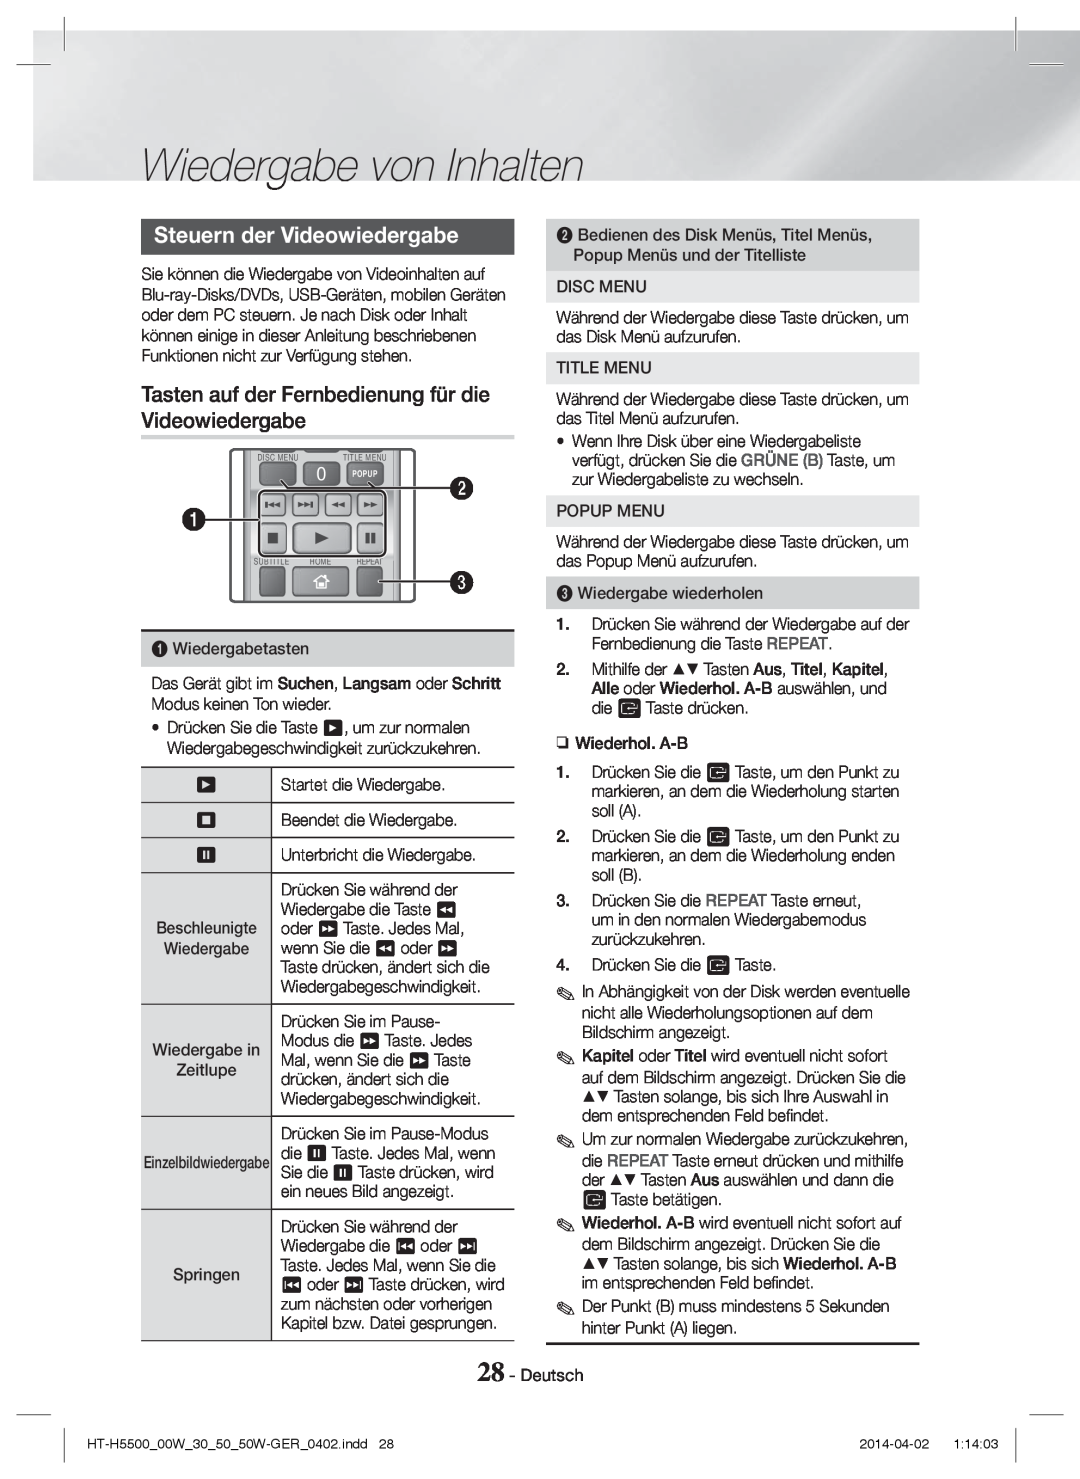 Samsung HT-H5550W/TK manual Steuern der Videowiedergabe, Tasten auf der Fernbedienung für die, Wiedergabe von Inhalten 